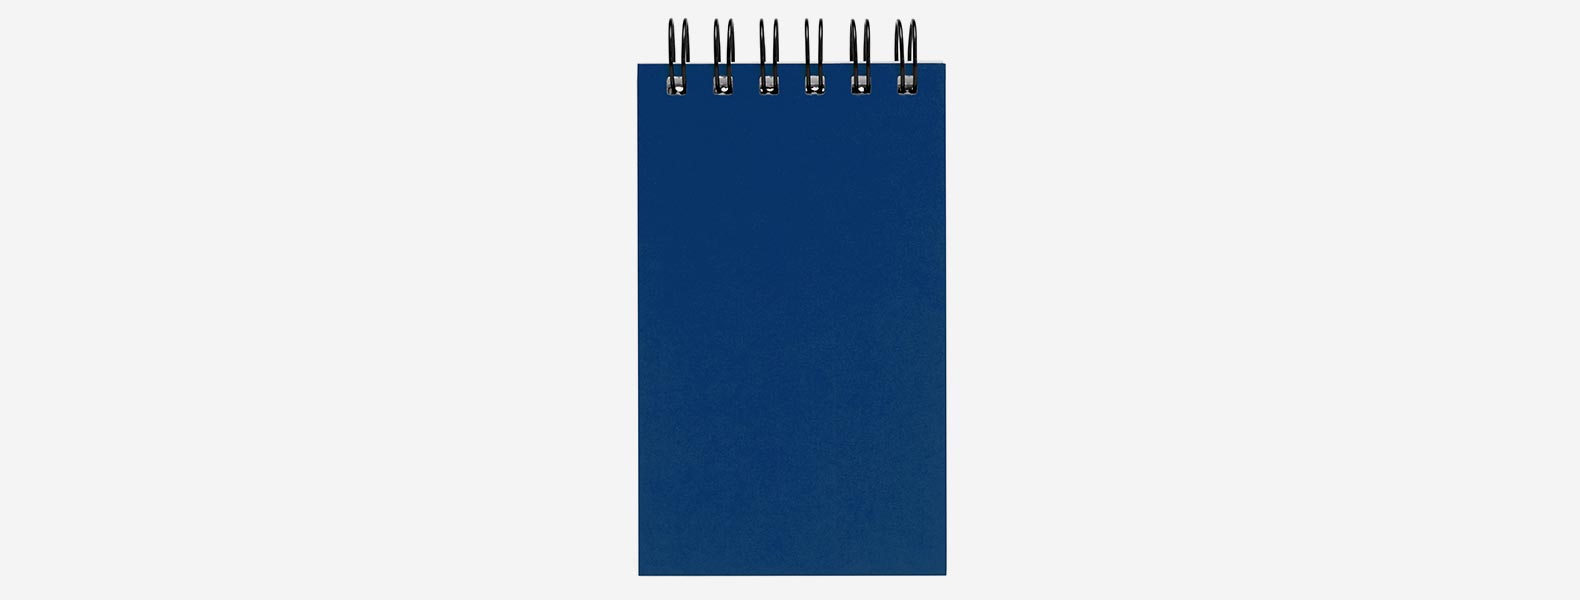 Caderno para anotações azul com capa dura. Conta com 100 folhas pautadas com fechamento wire-o e 5 cores com 25 folhas autocolantes.